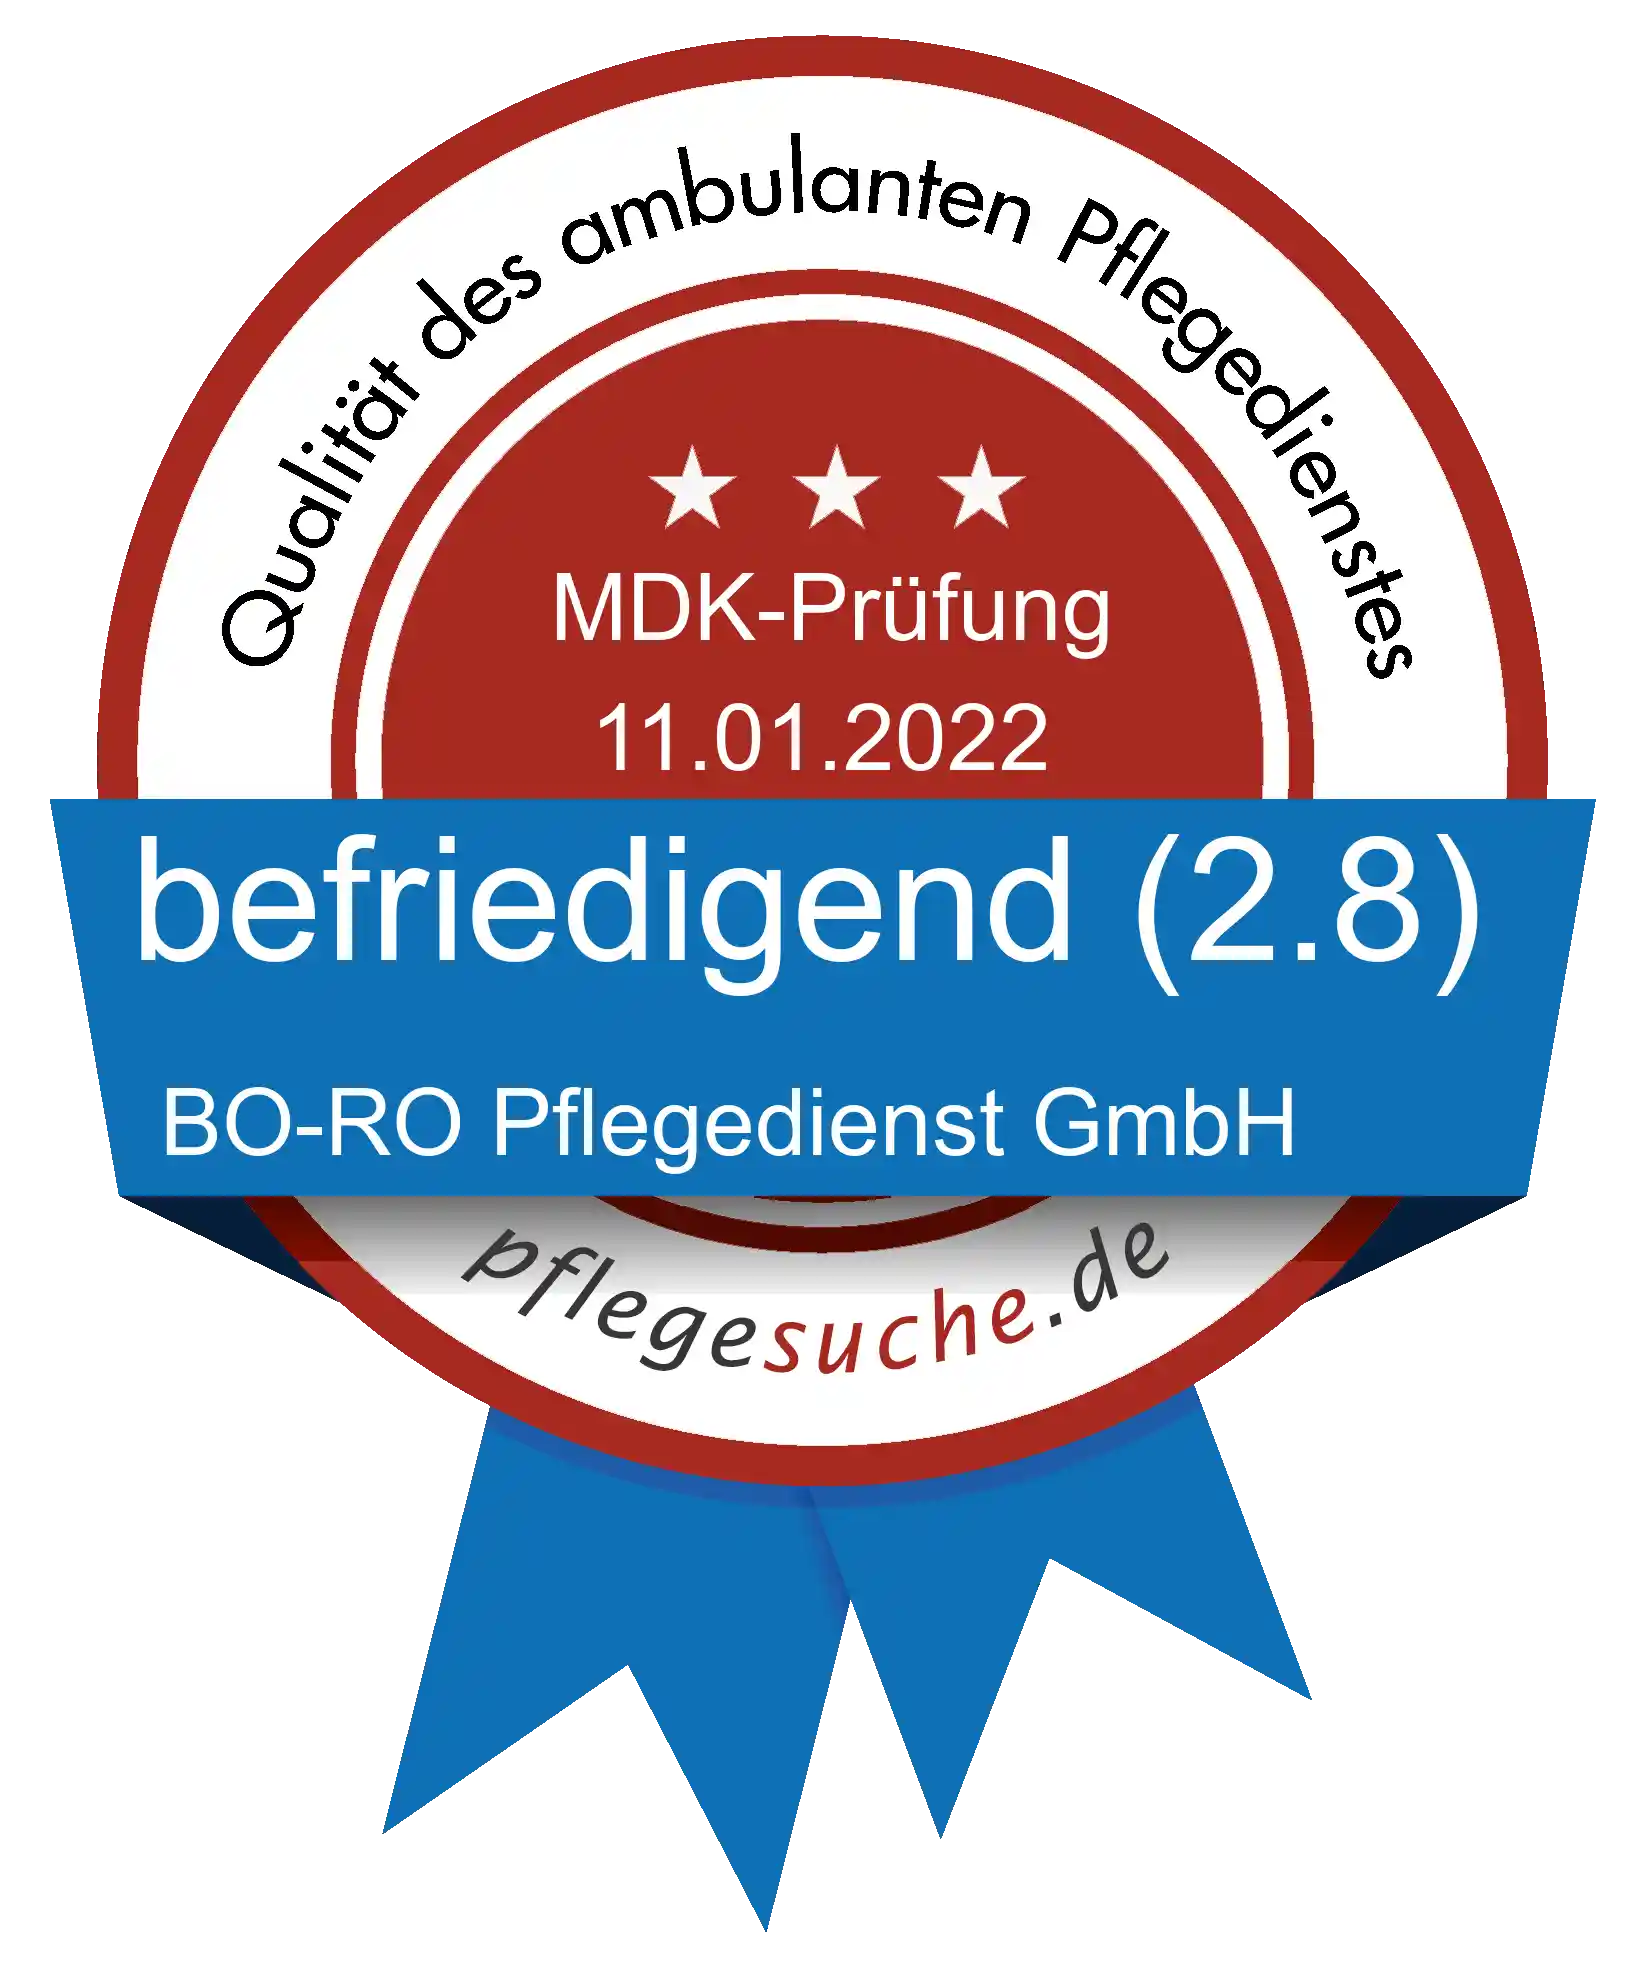 Siegel Benotung: BO-RO Pflegedienst GmbH